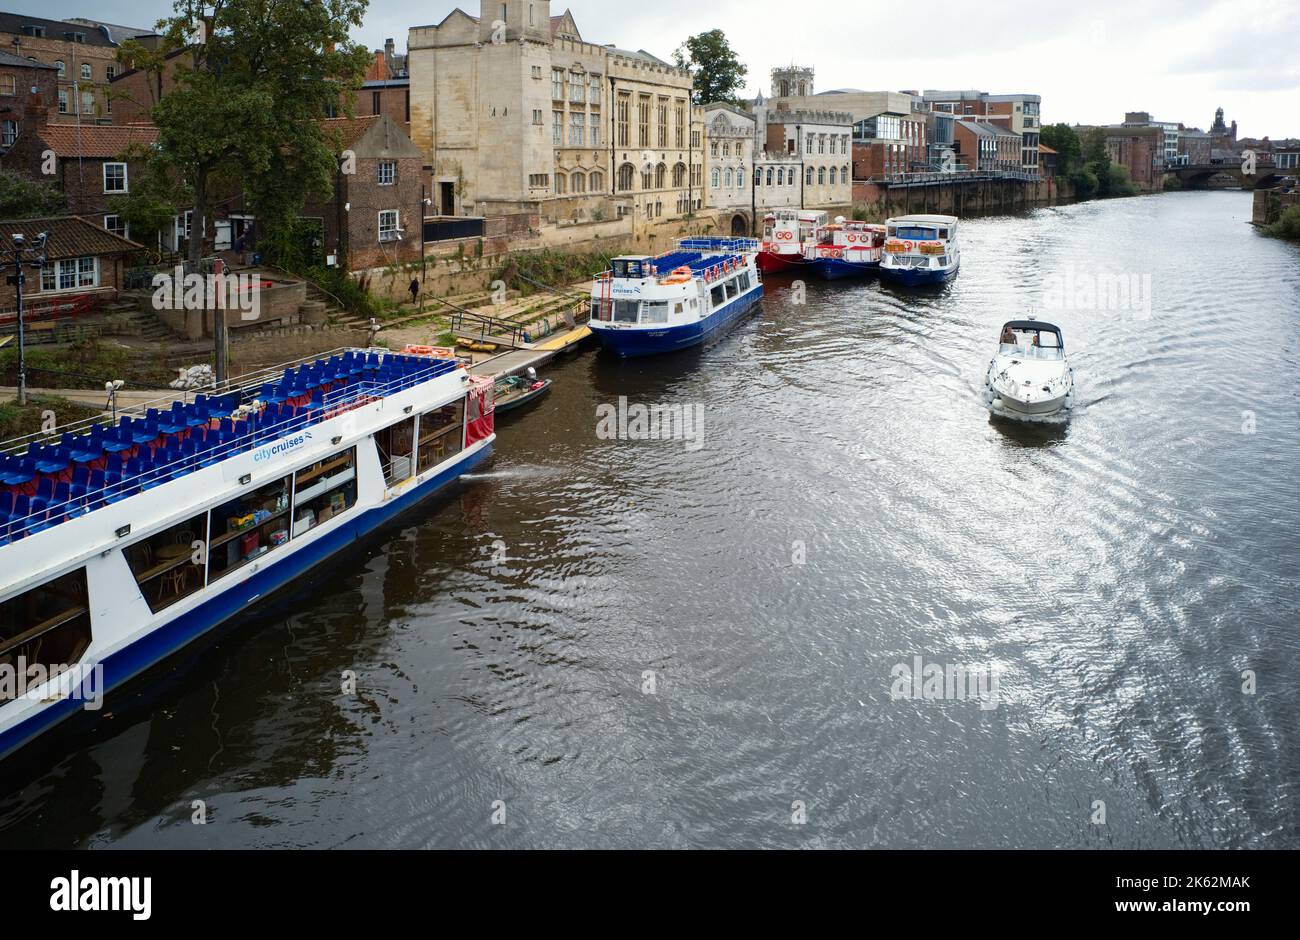 Ein kleines Boot fährt an festfahrenden Flussschiffen auf dem Fluss Ouse in York vorbei Stockfoto